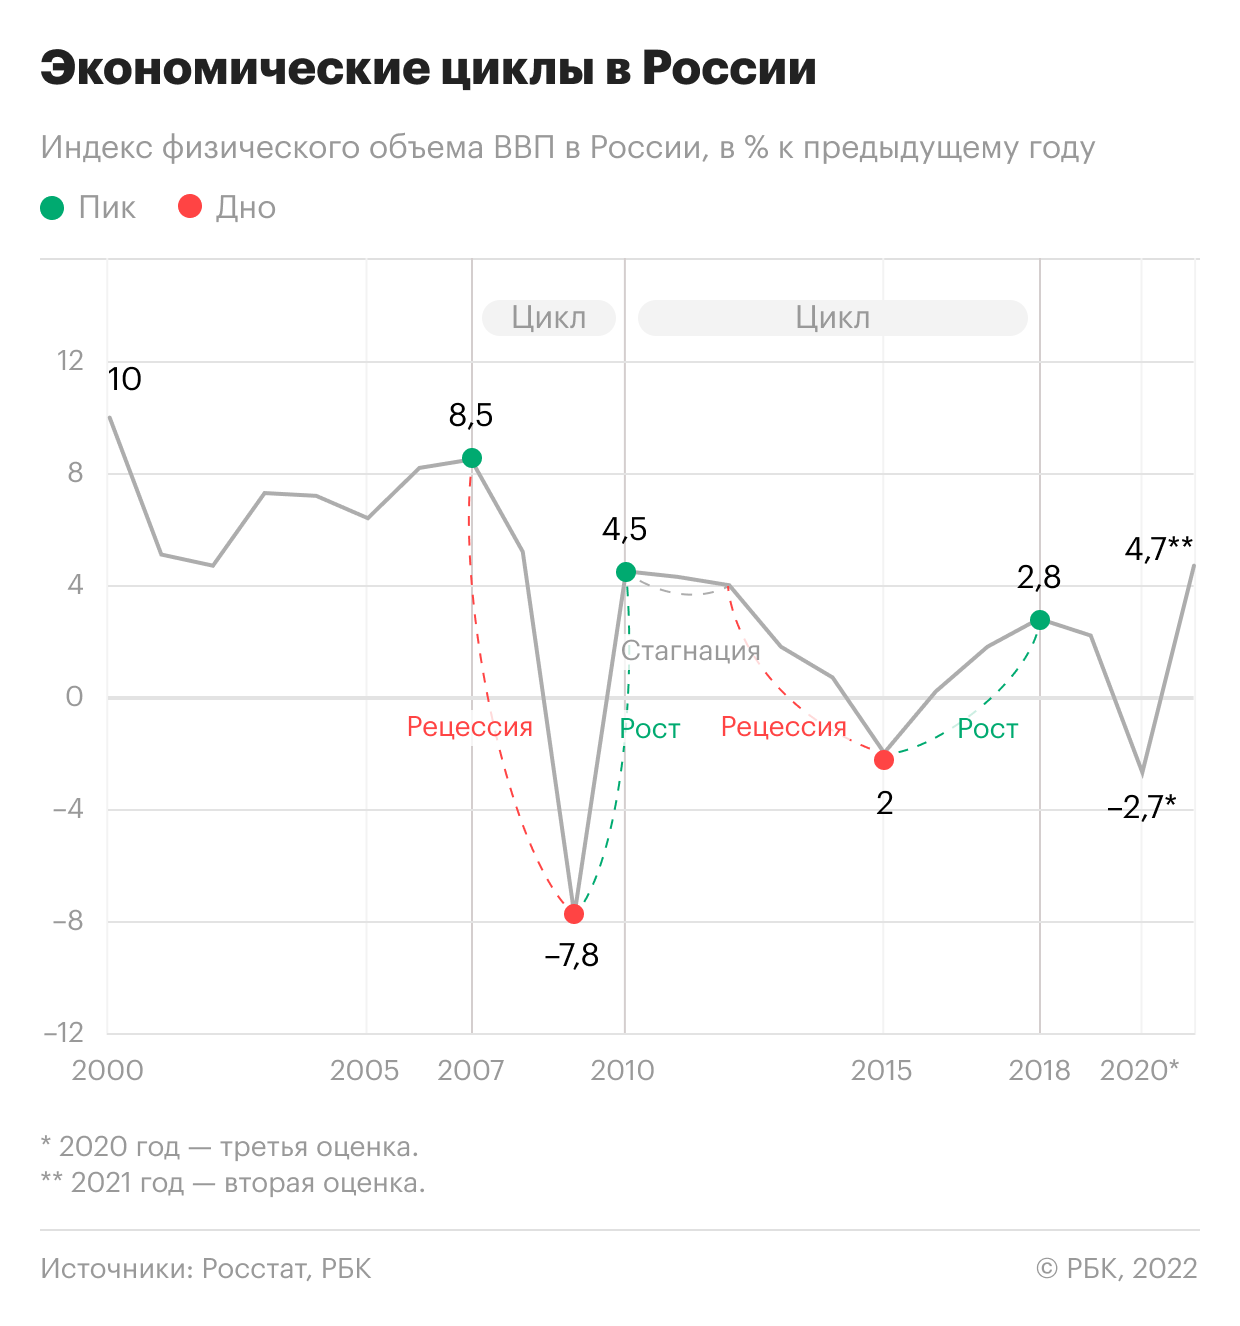 Экономические циклы на примере индекса физического объема ВВП России. В&nbsp;2011 и 2012 годах была зафиксирована стагнация&nbsp;&mdash;&nbsp; ВВП был на уровнях 4,3% и 4,0% соответственно. В 2013 году стагнация&nbsp;перешла в рецессию